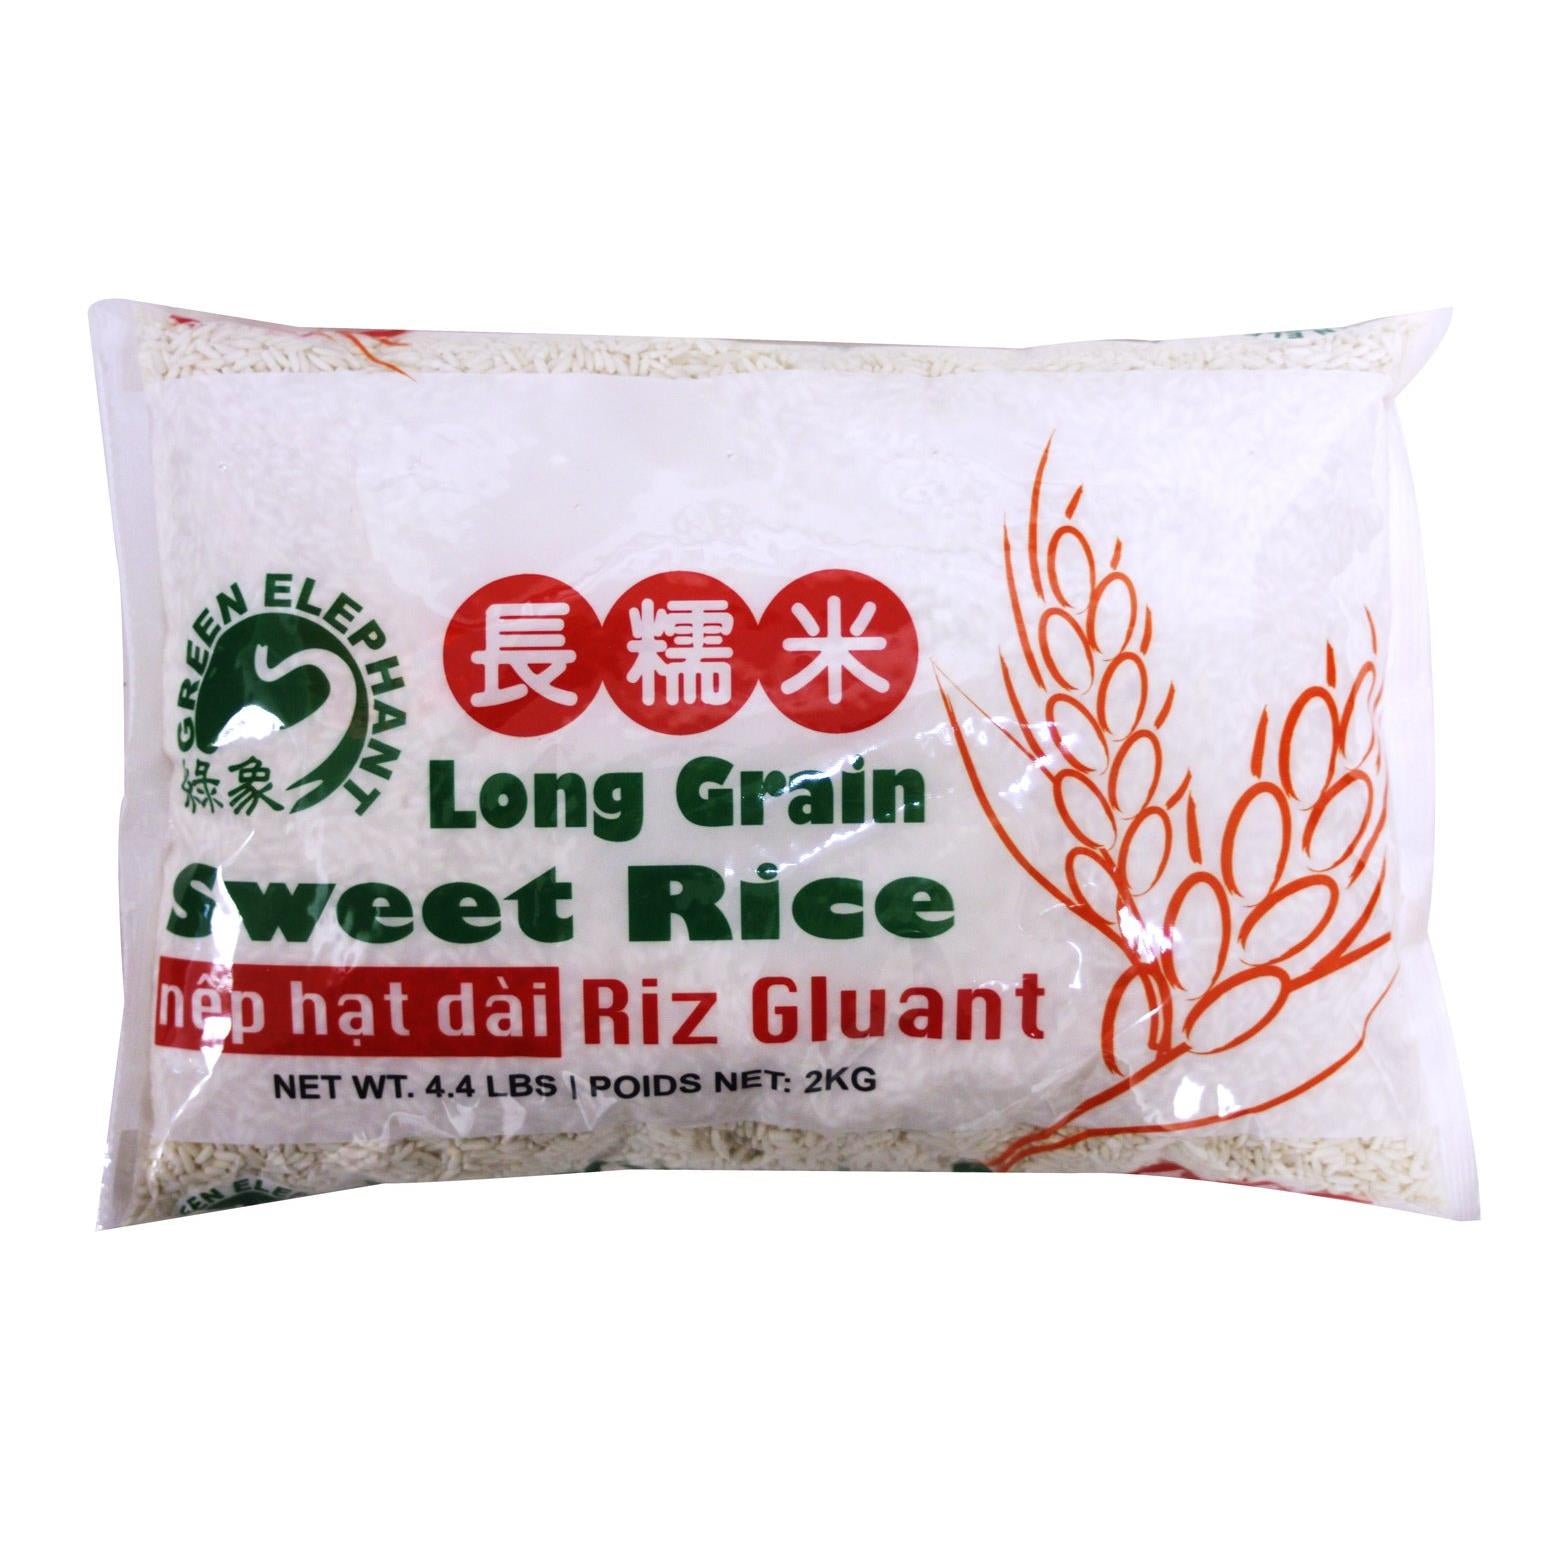 长糯米 Green Elephant Thai Pure White (Glutinous) Long Grain Sweet Rice 4.4 lbs